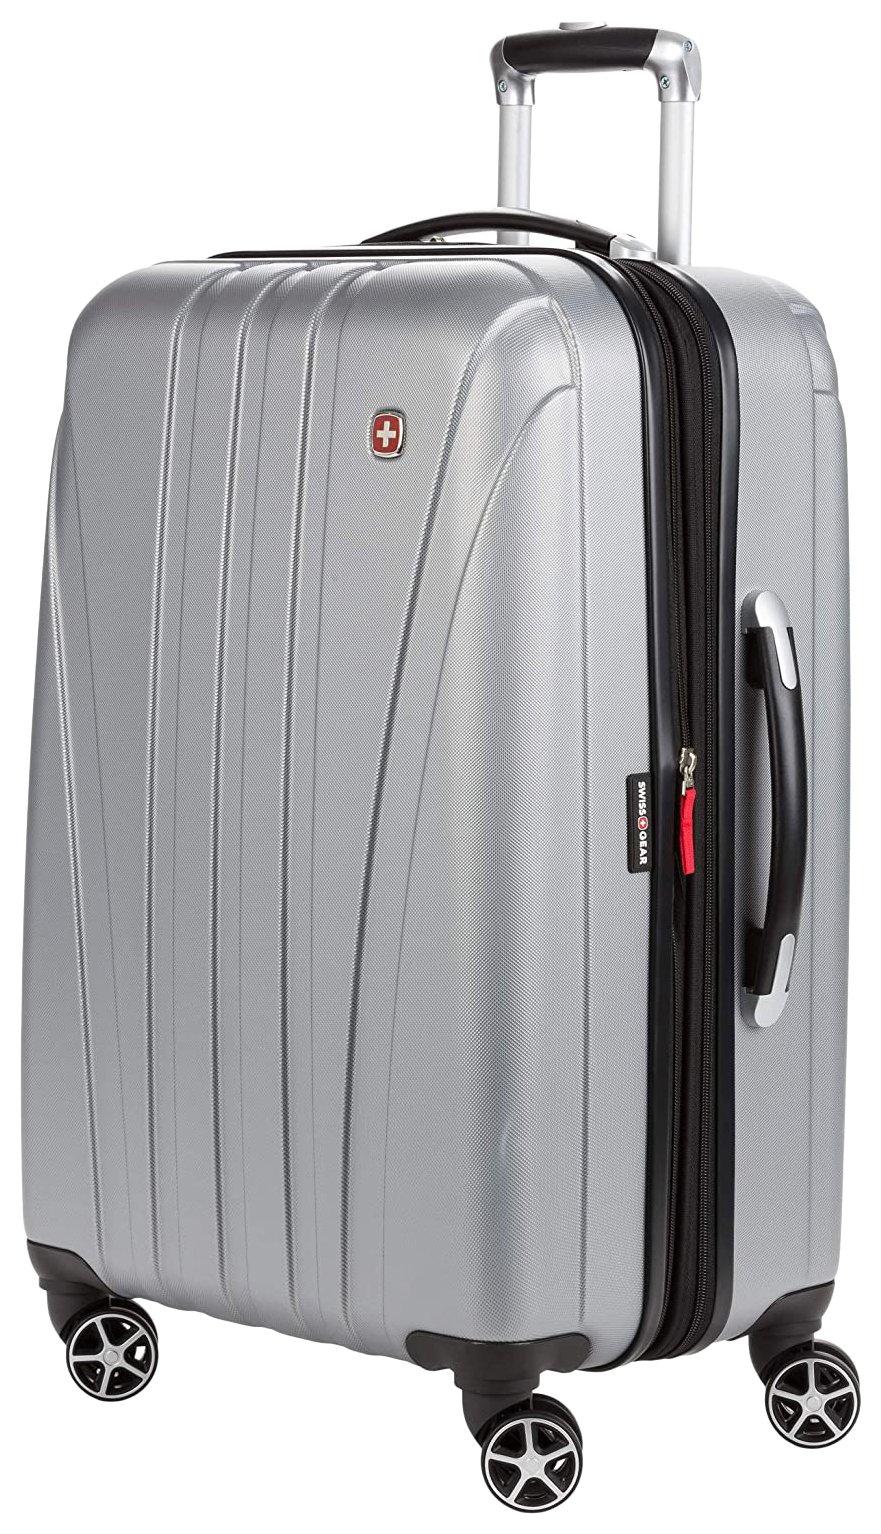 24'' Expandable Hardside Spinner Luggage